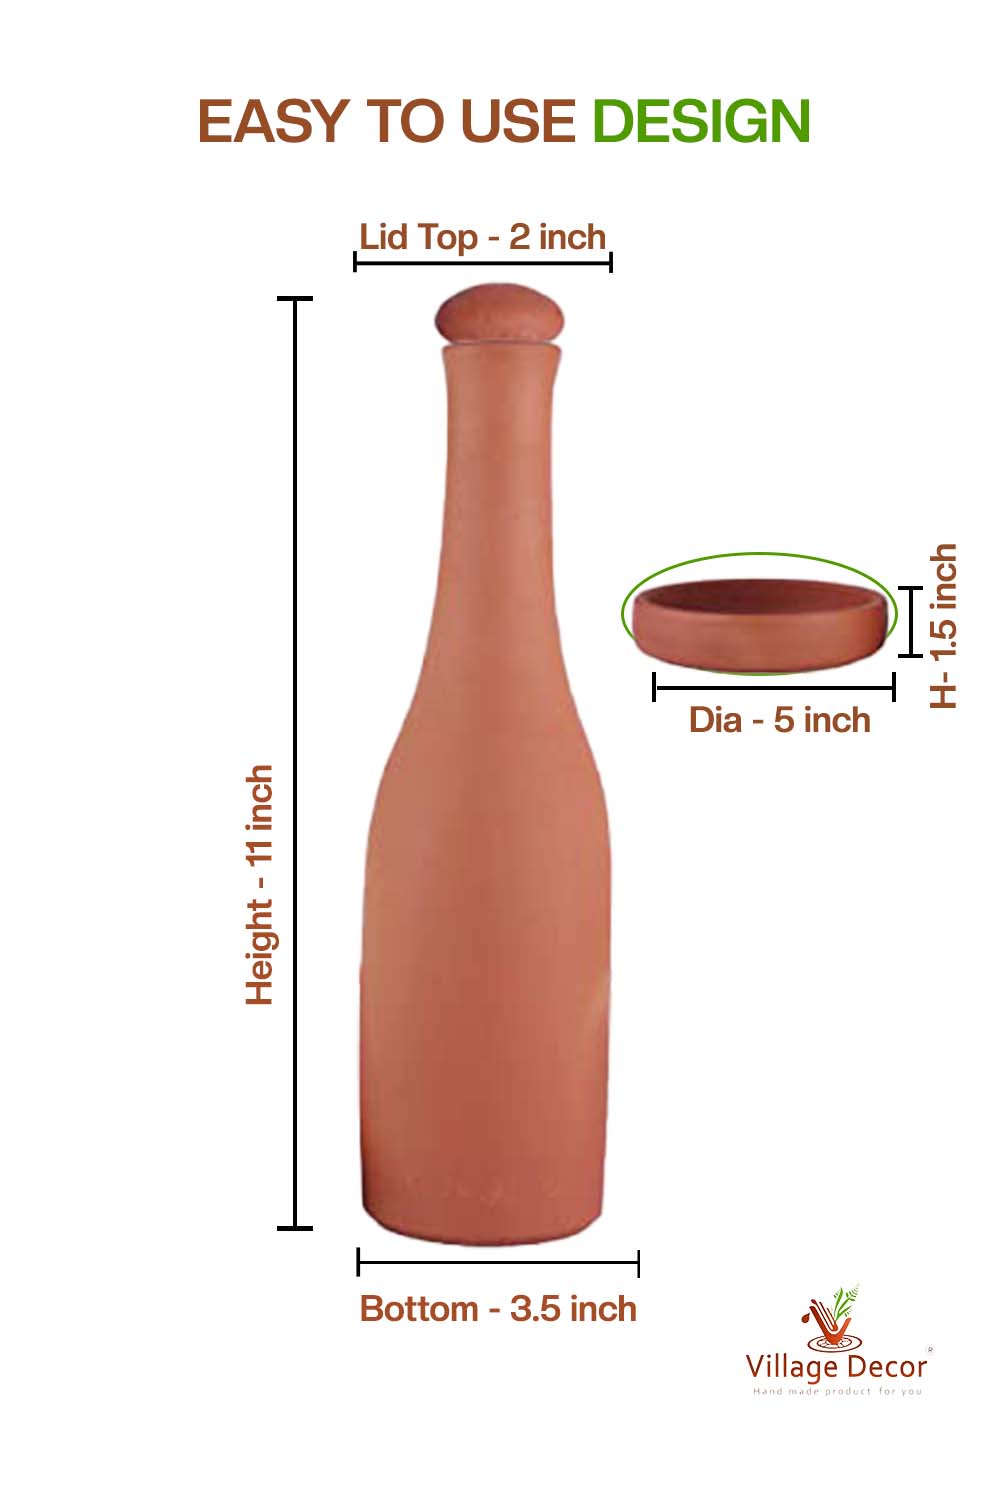 Earthen Clay Water Bottle With Tray (Pre-seasoned) - 800 ml